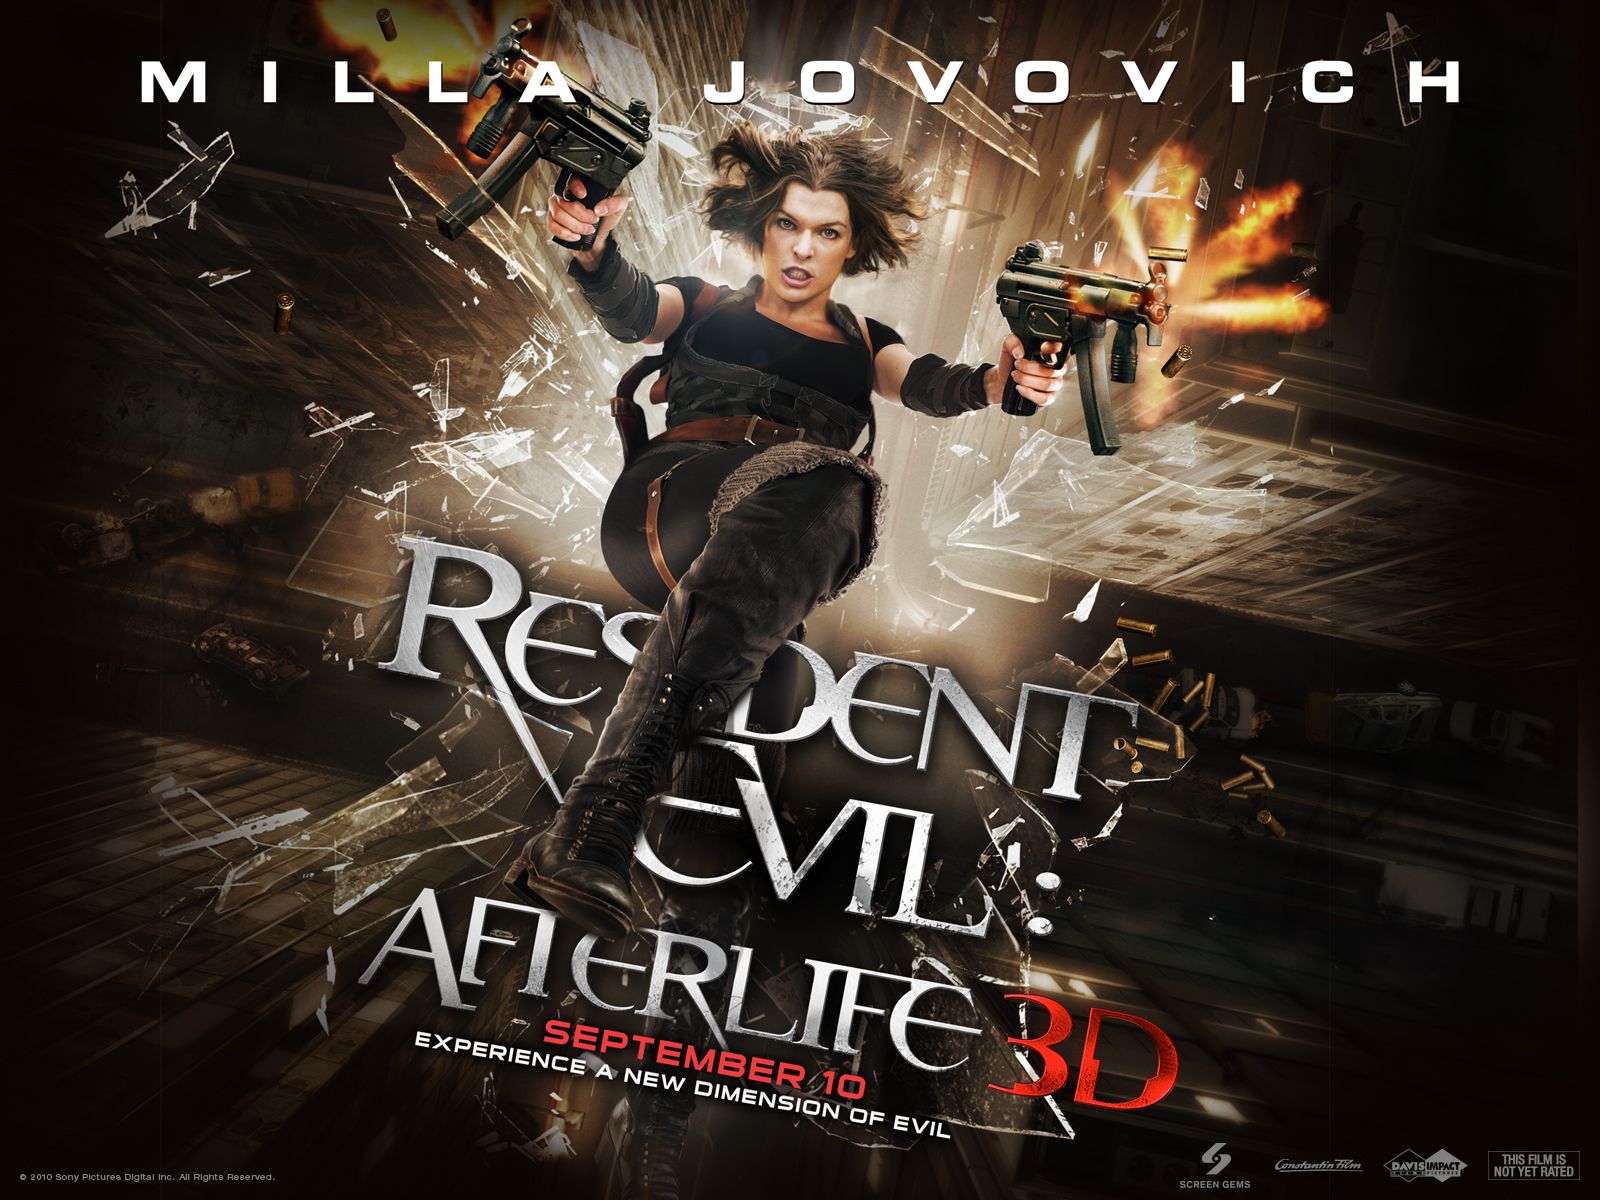 Resident Evil Afterlife Wallpaper